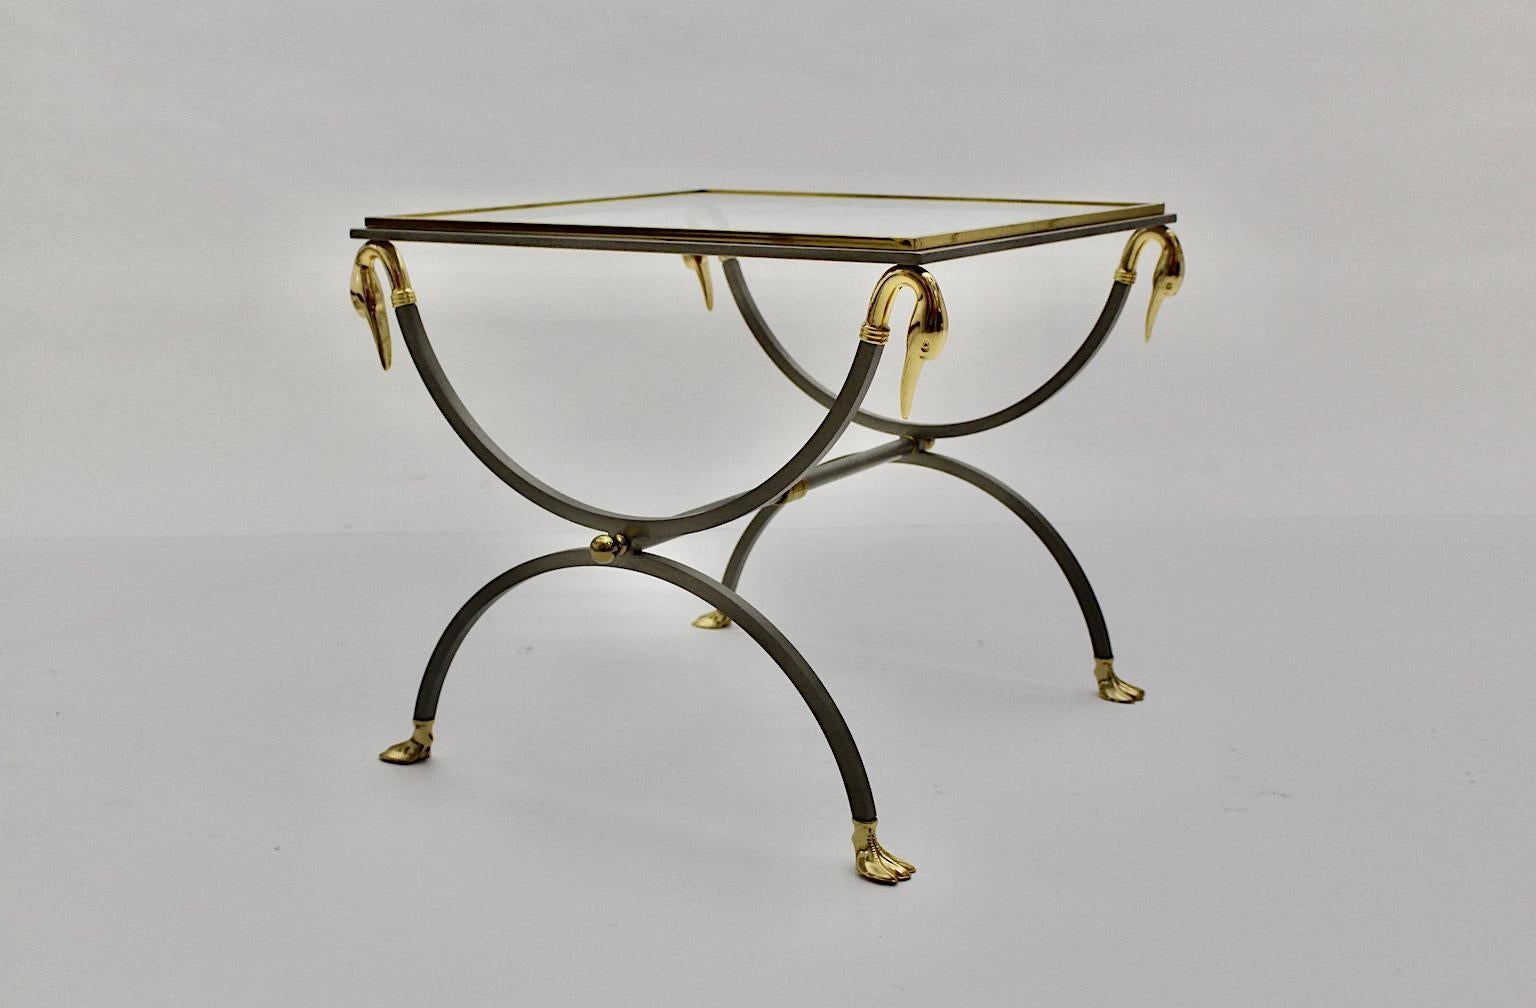  Table basse ou table d'appoint de la Maison Maison/One, conçue en France, vers 1970. La table basse de haute qualité a été fabriquée en acier inoxydable brossé et les détails dorés comme les têtes et les pieds de cygne.
Très bon état avec des